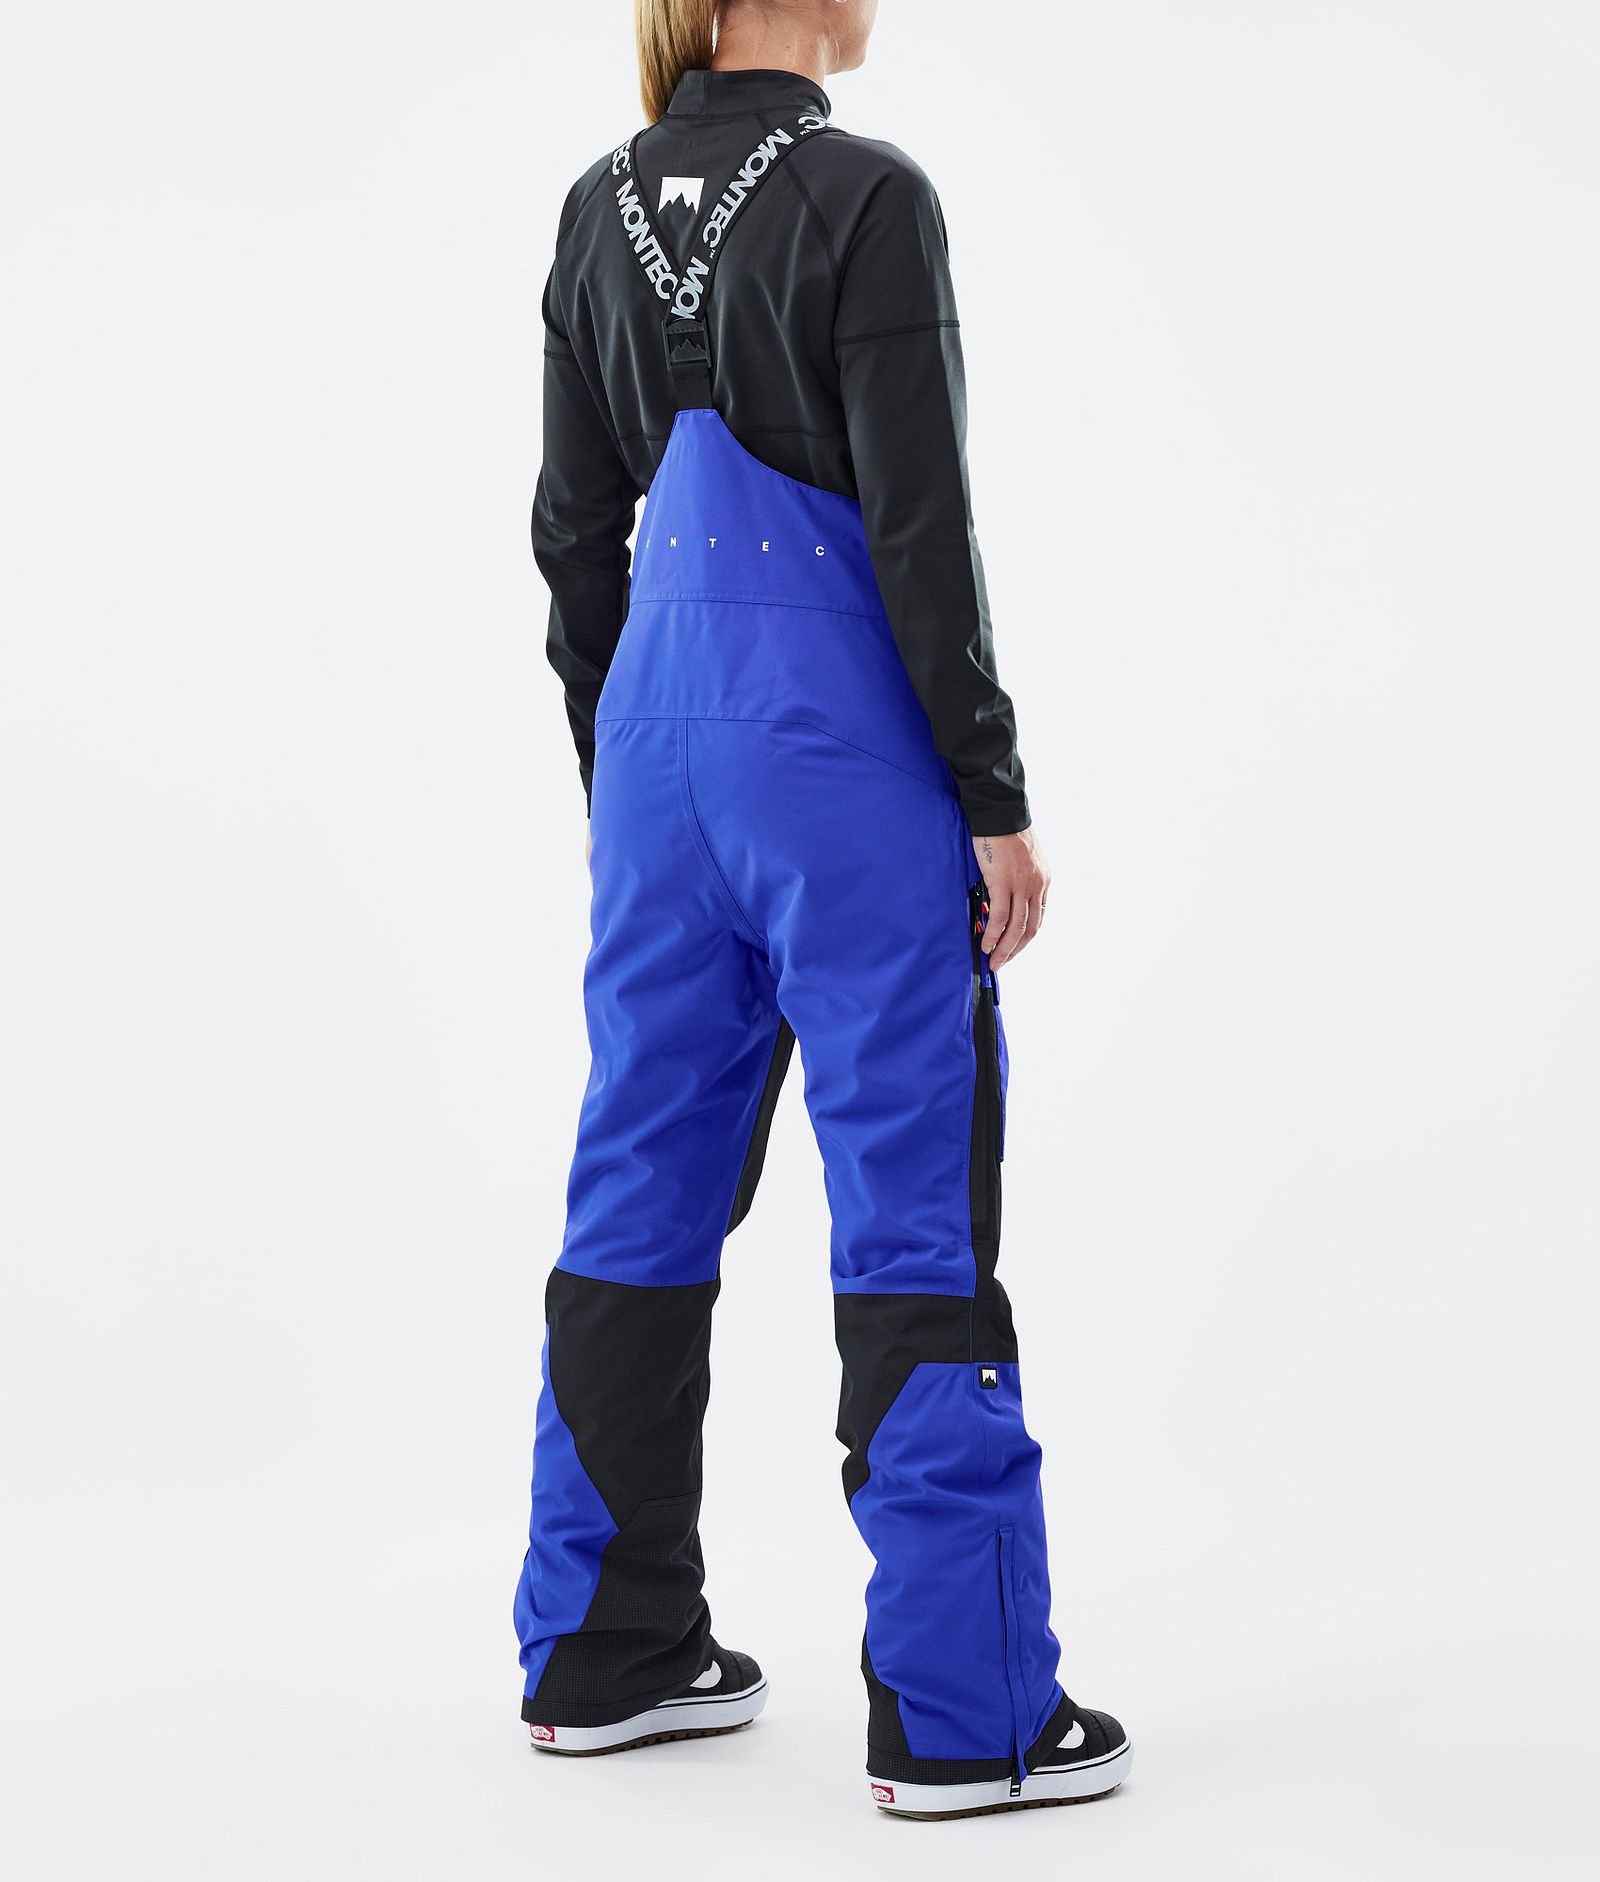 Fawk W Spodnie Snowboardowe Kobiety Cobalt Blue/Black Renewed, Zdjęcie 4 z 7